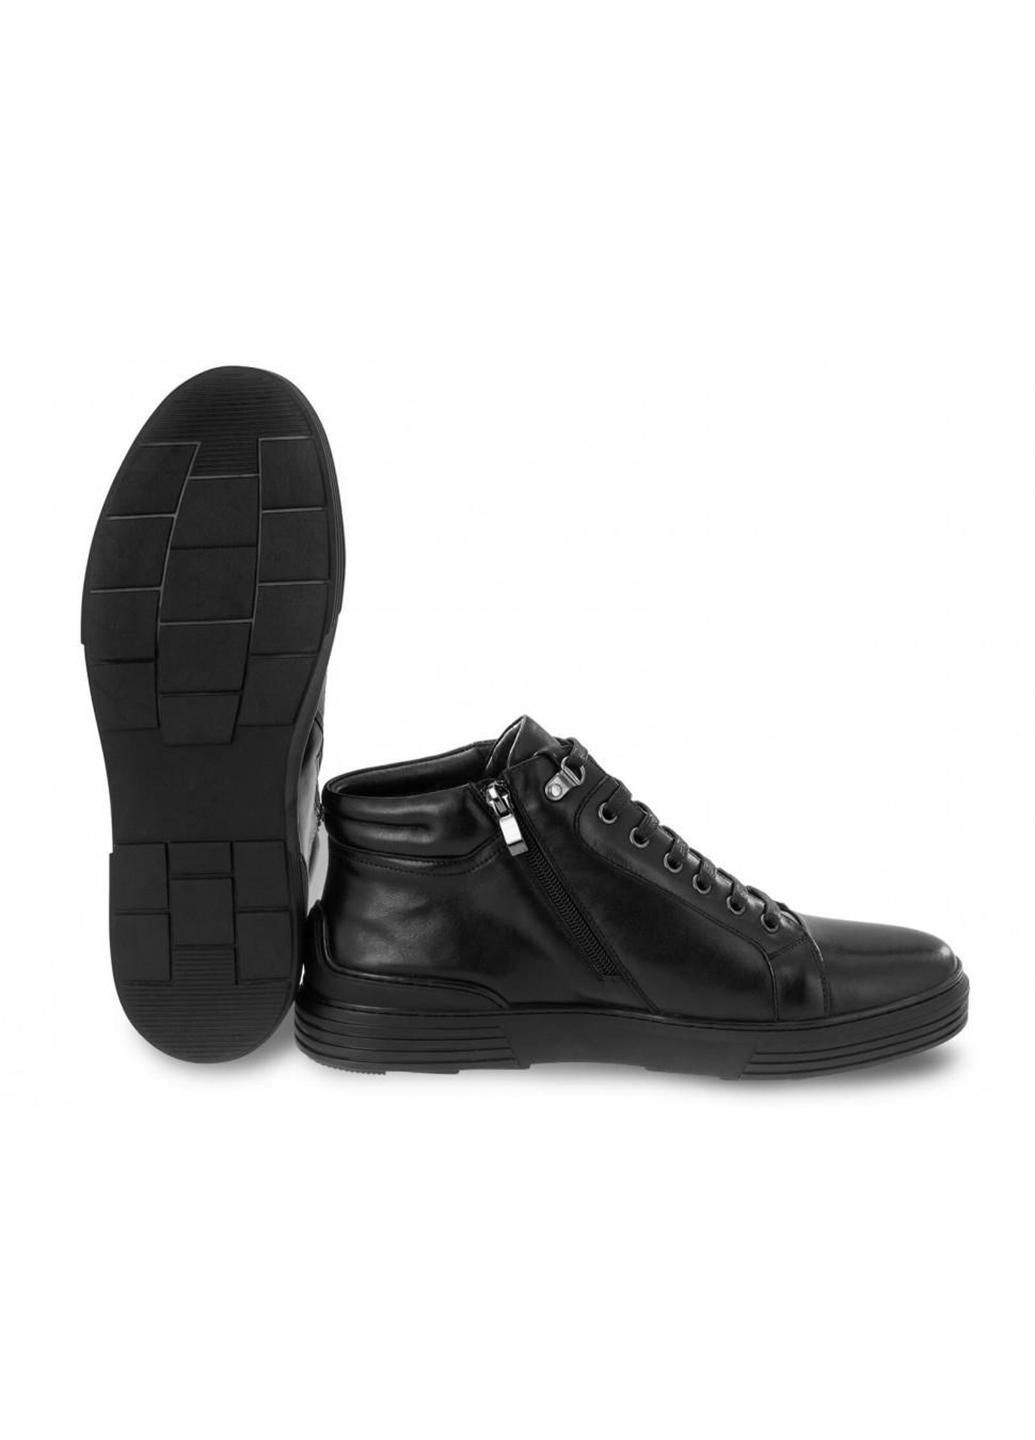 Черные зимние ботинки 7194026-б цвет черный Carlo Delari